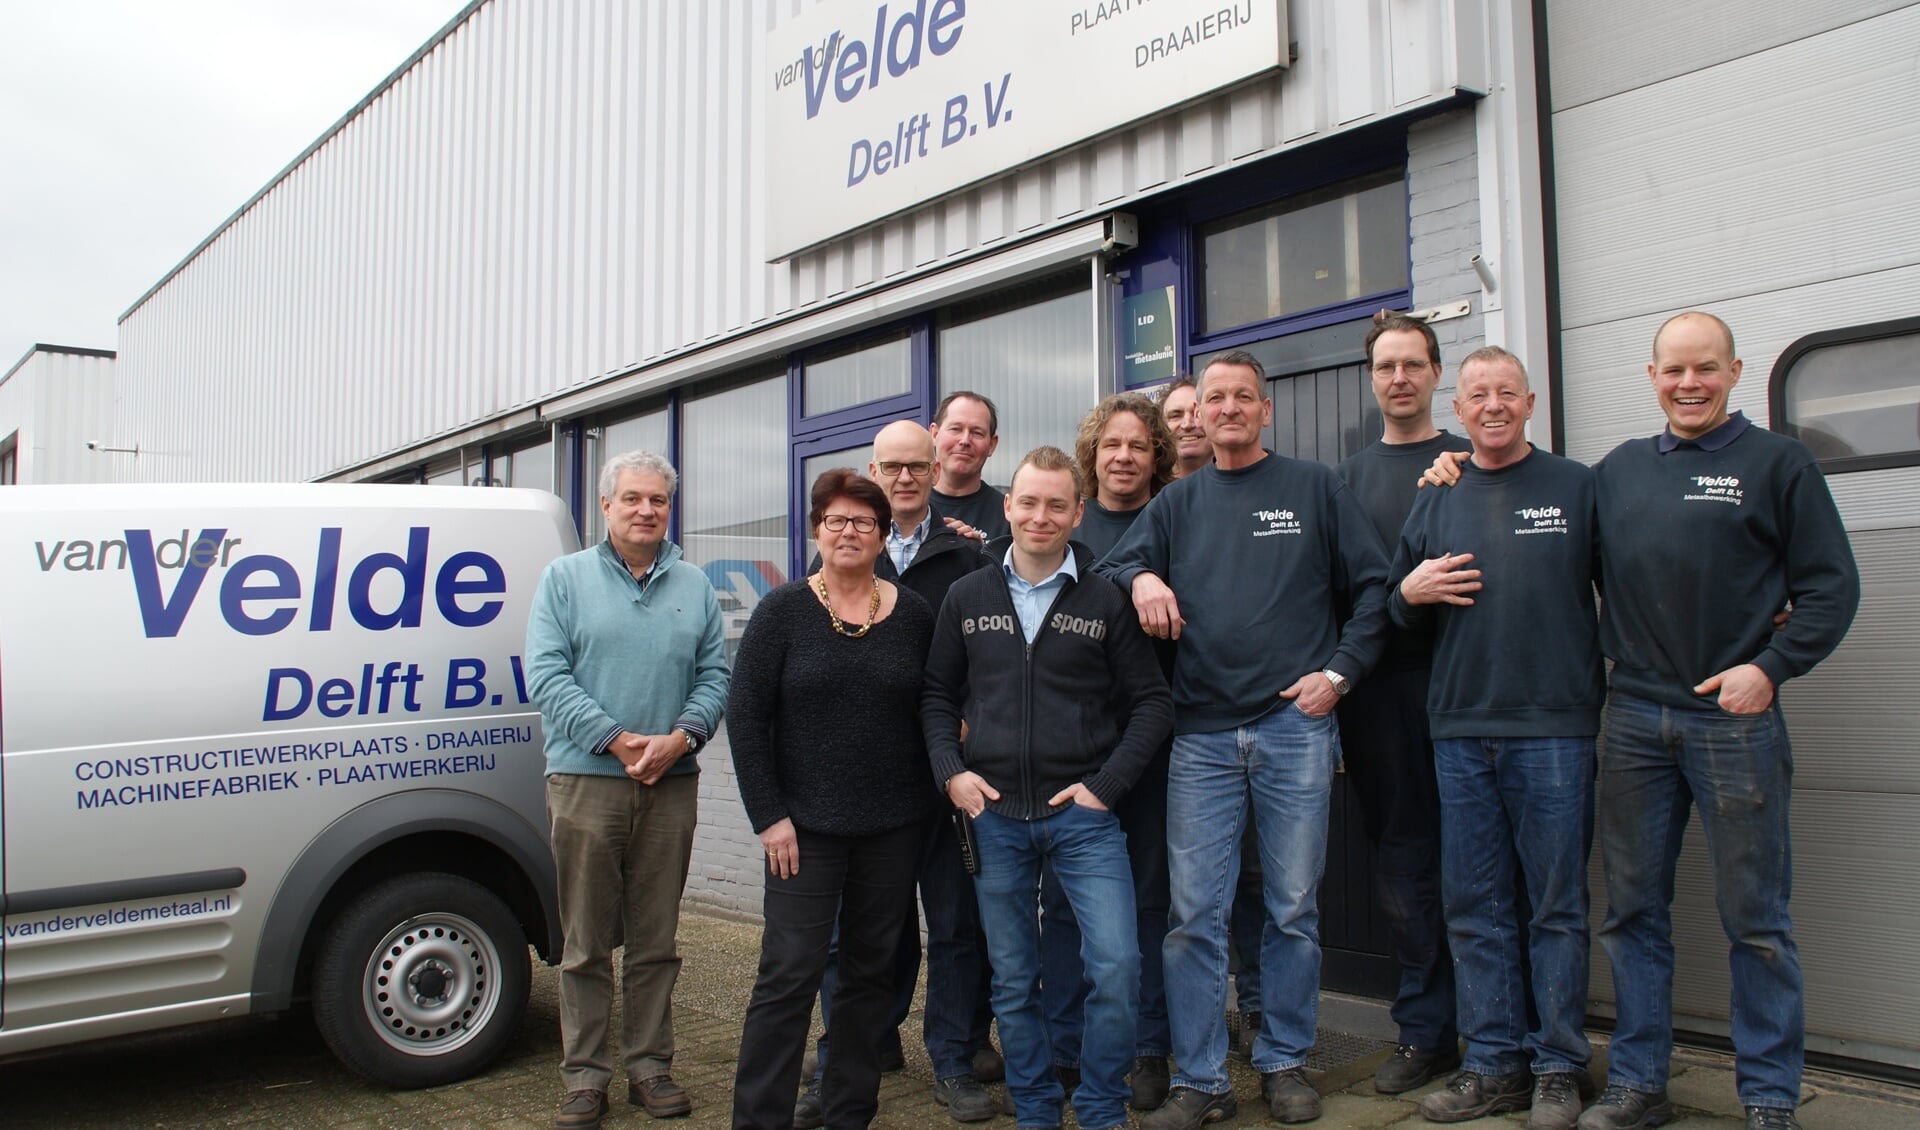 Het voltallige personeel van Van der Velde Metaal, met uiterst links de oude eigenaar Adri van der Velde en in het midden Ronald Wiegel.